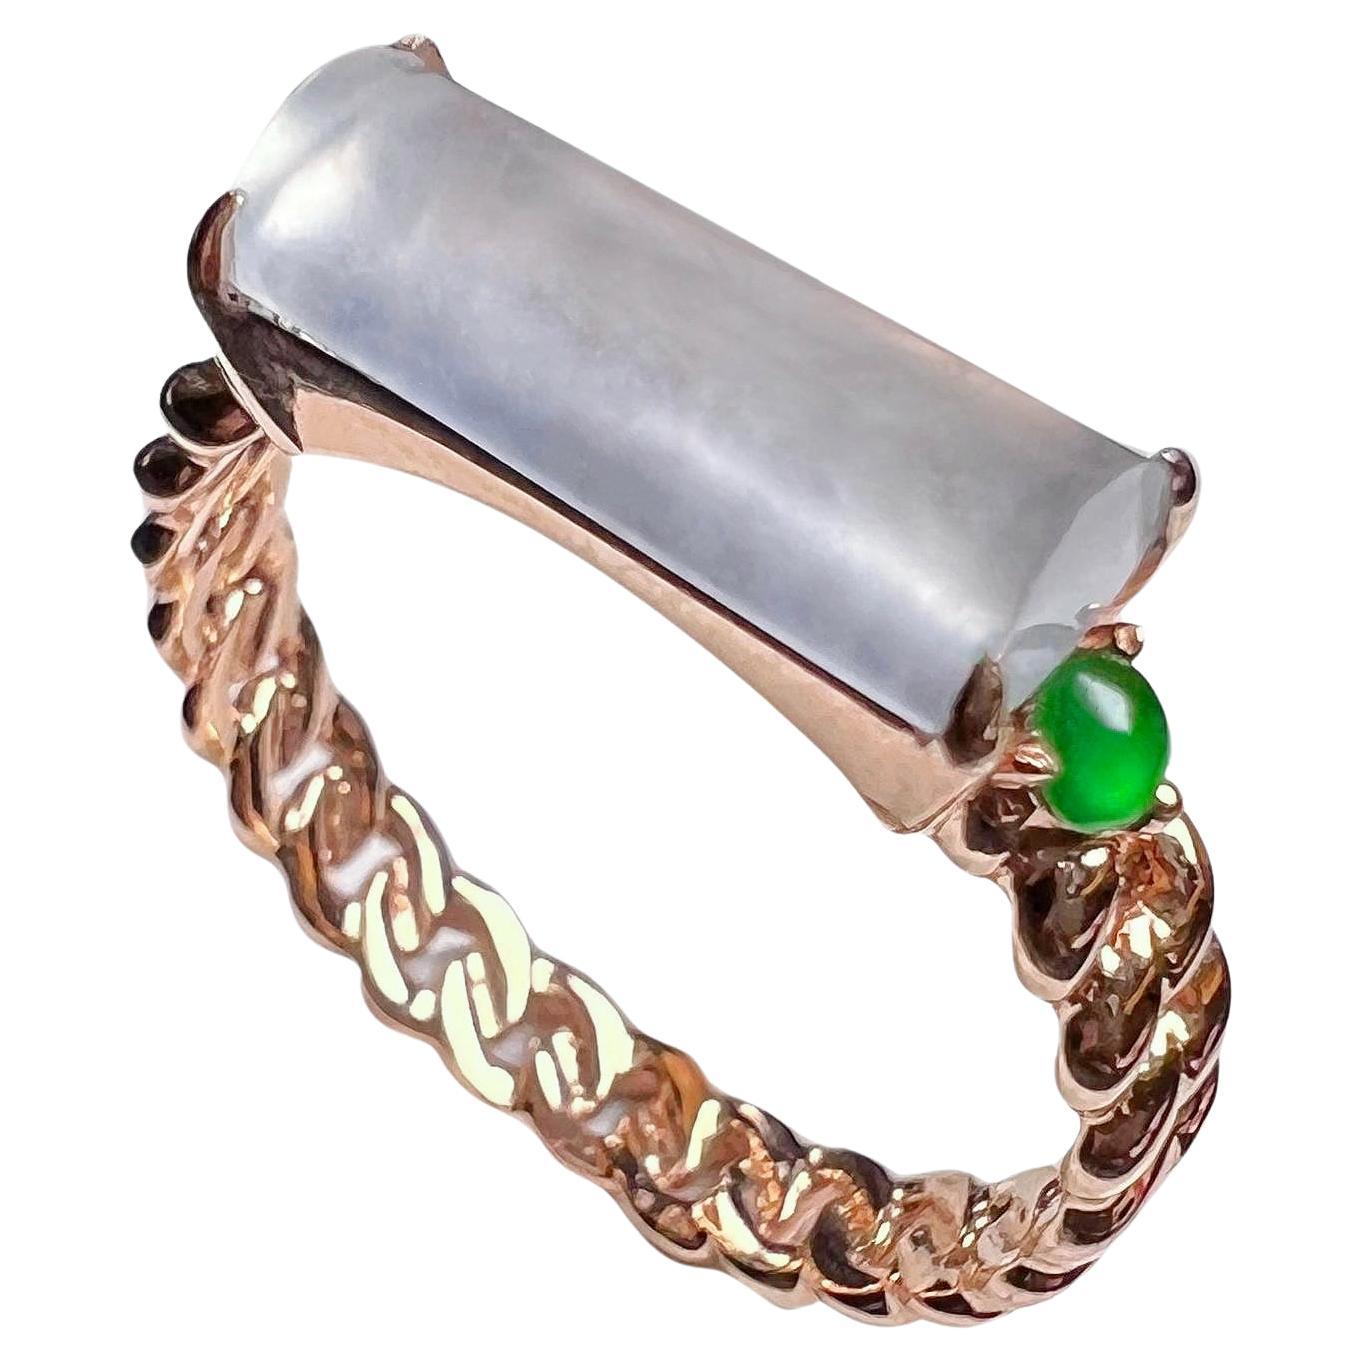 18K Rose Gold Icy Jadeite Green Jadeite Horizontal Bar Ring Cocktail Ring